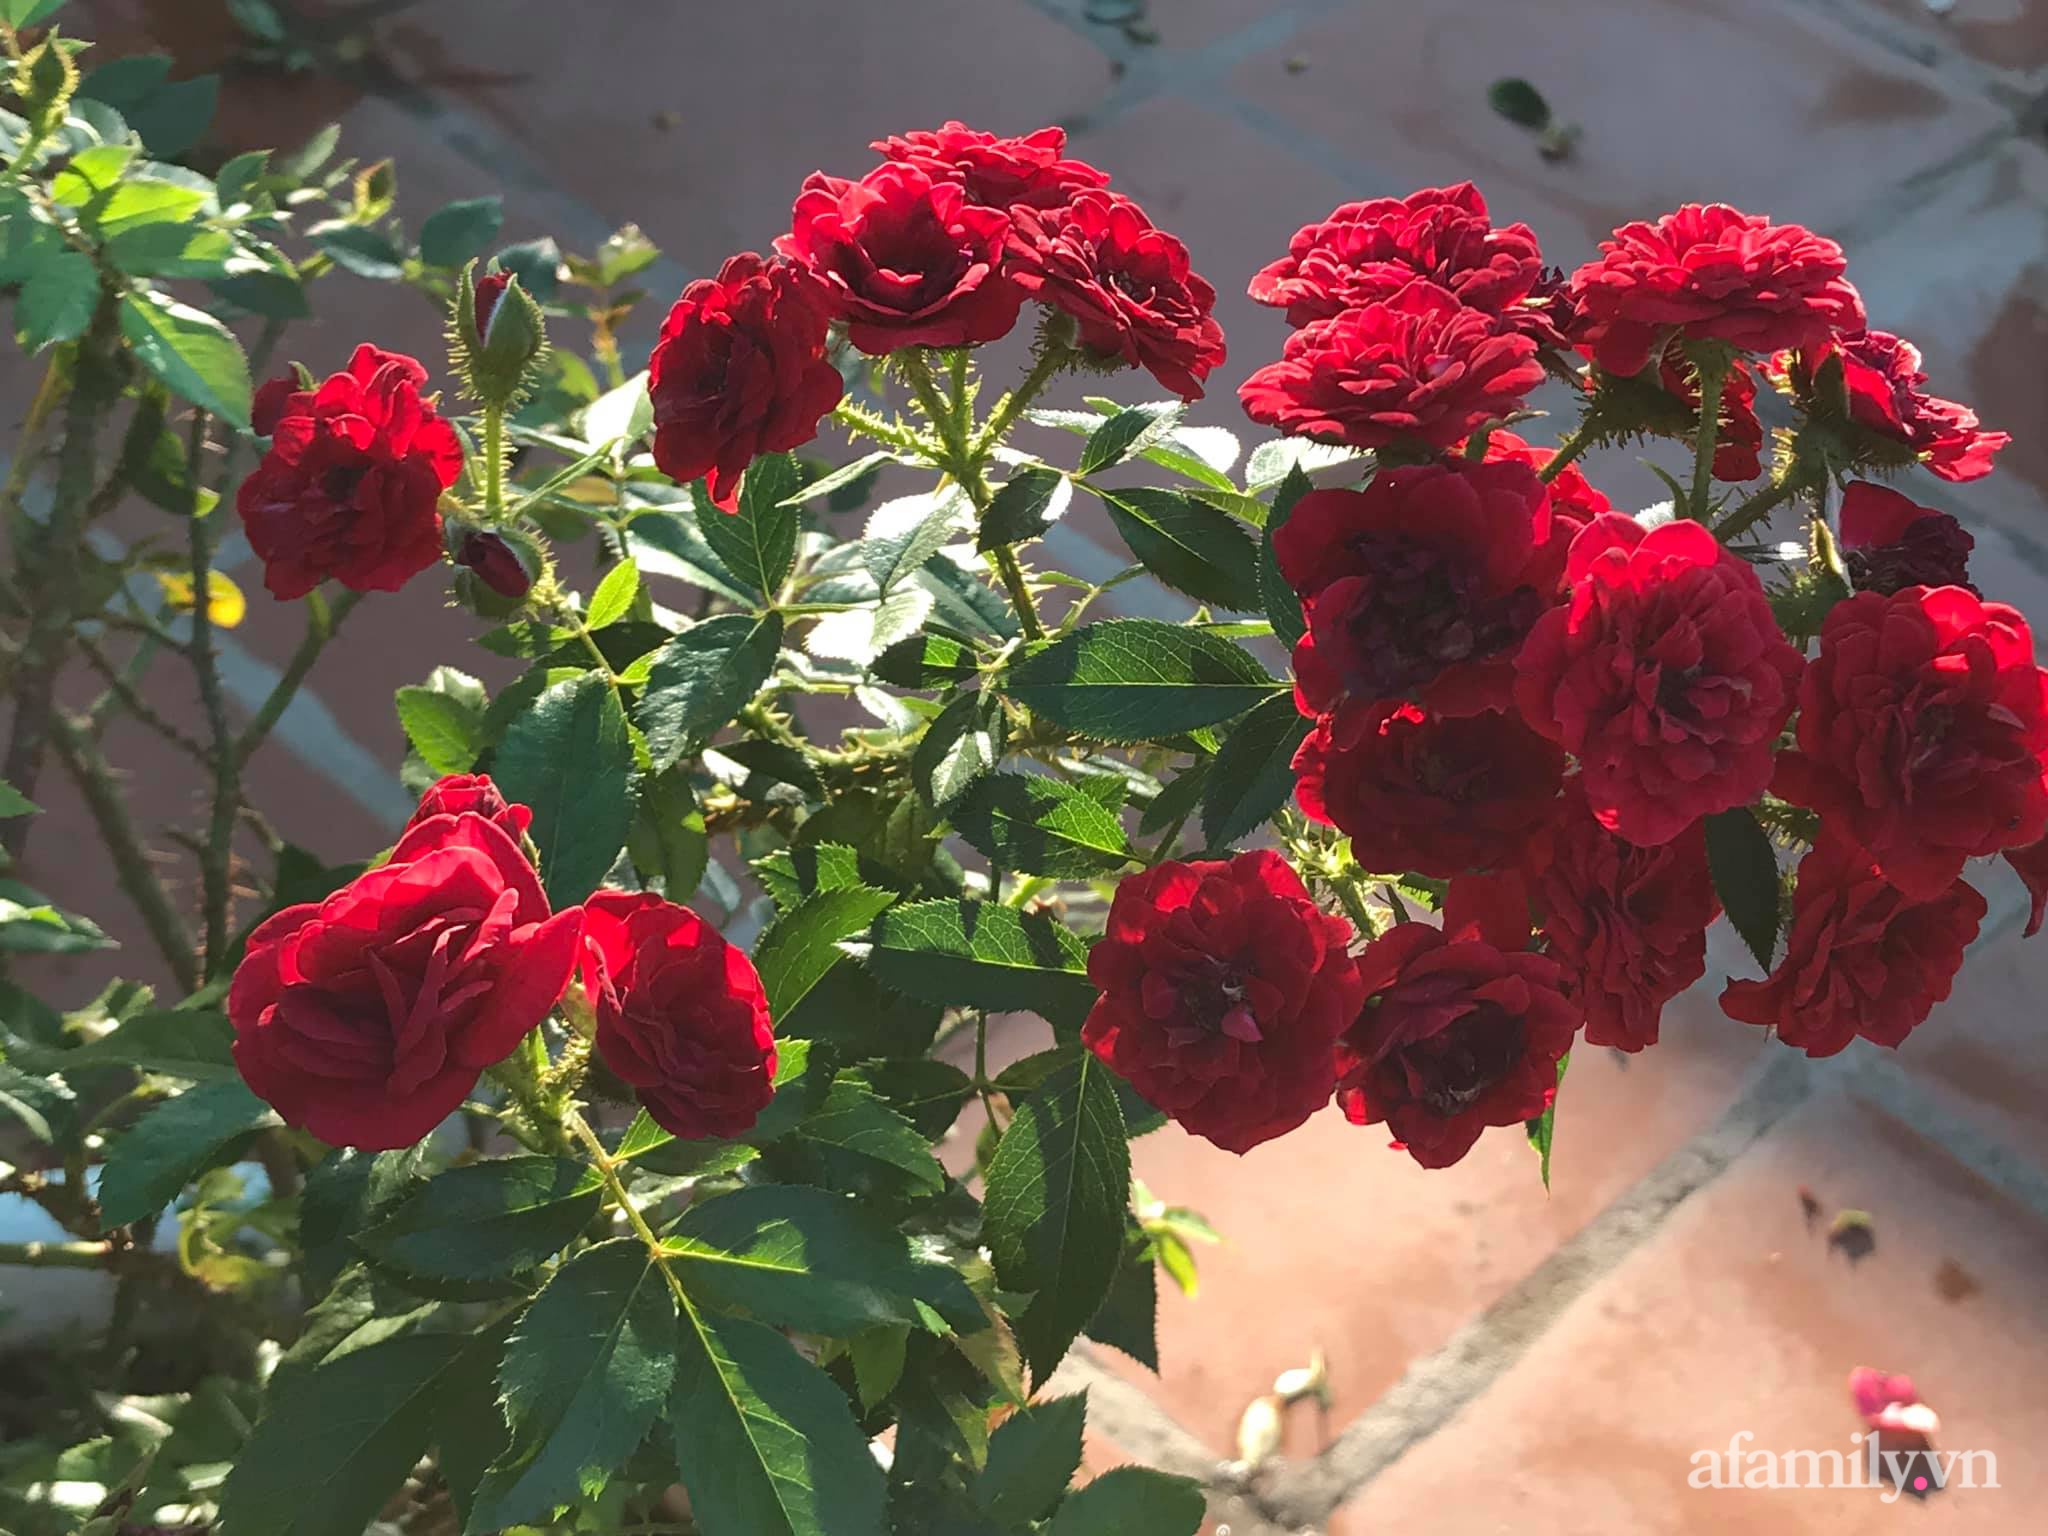 Ngày 20/11 ghé thăm vườn hồng ngát hương dịu dàng khoe sắc trên sân thượng của cô giáo dạy Văn ở Nha Trang - Ảnh 11.